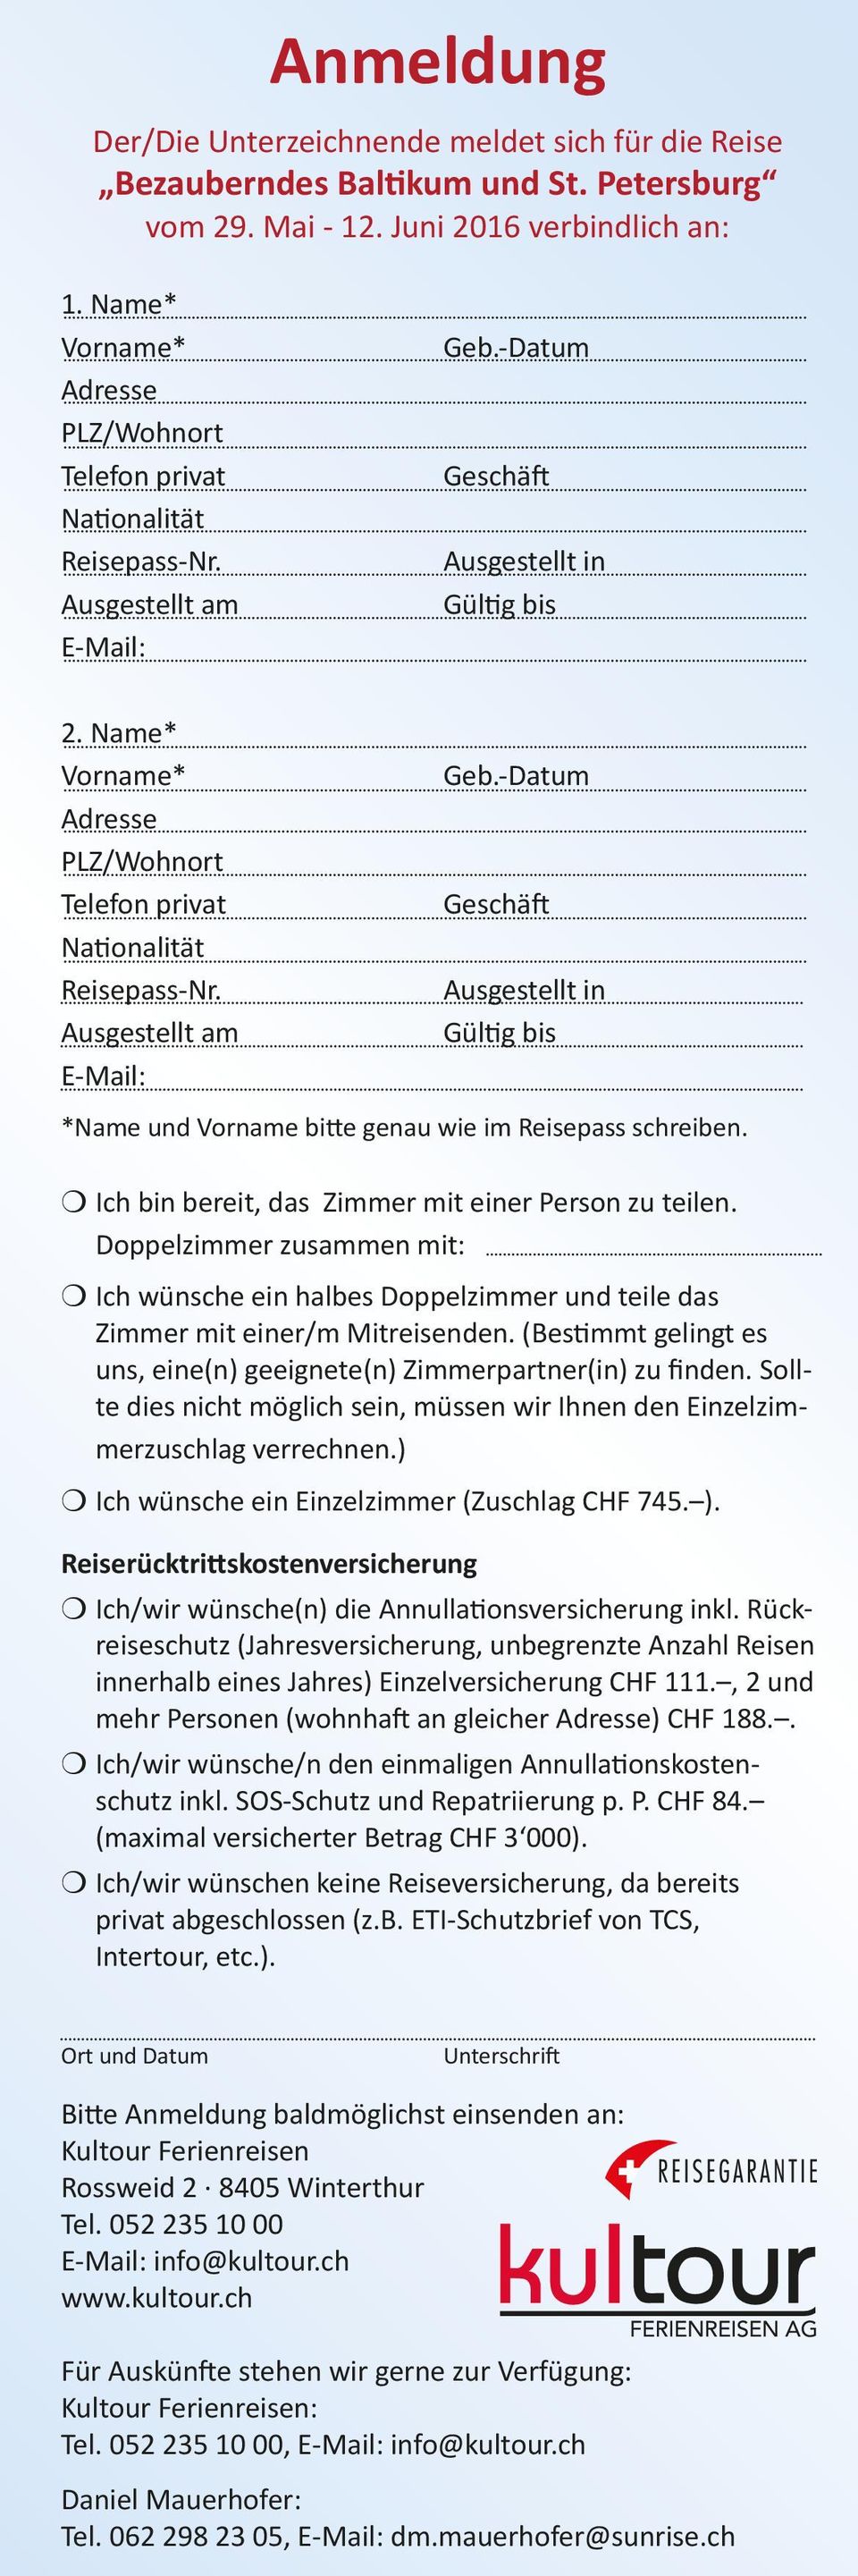 Name* Vorname* Adresse PLZ/Wohnort Telefon privat Nationalität Reisepass-Nr. Ausgestellt am E-Mail: Geb.